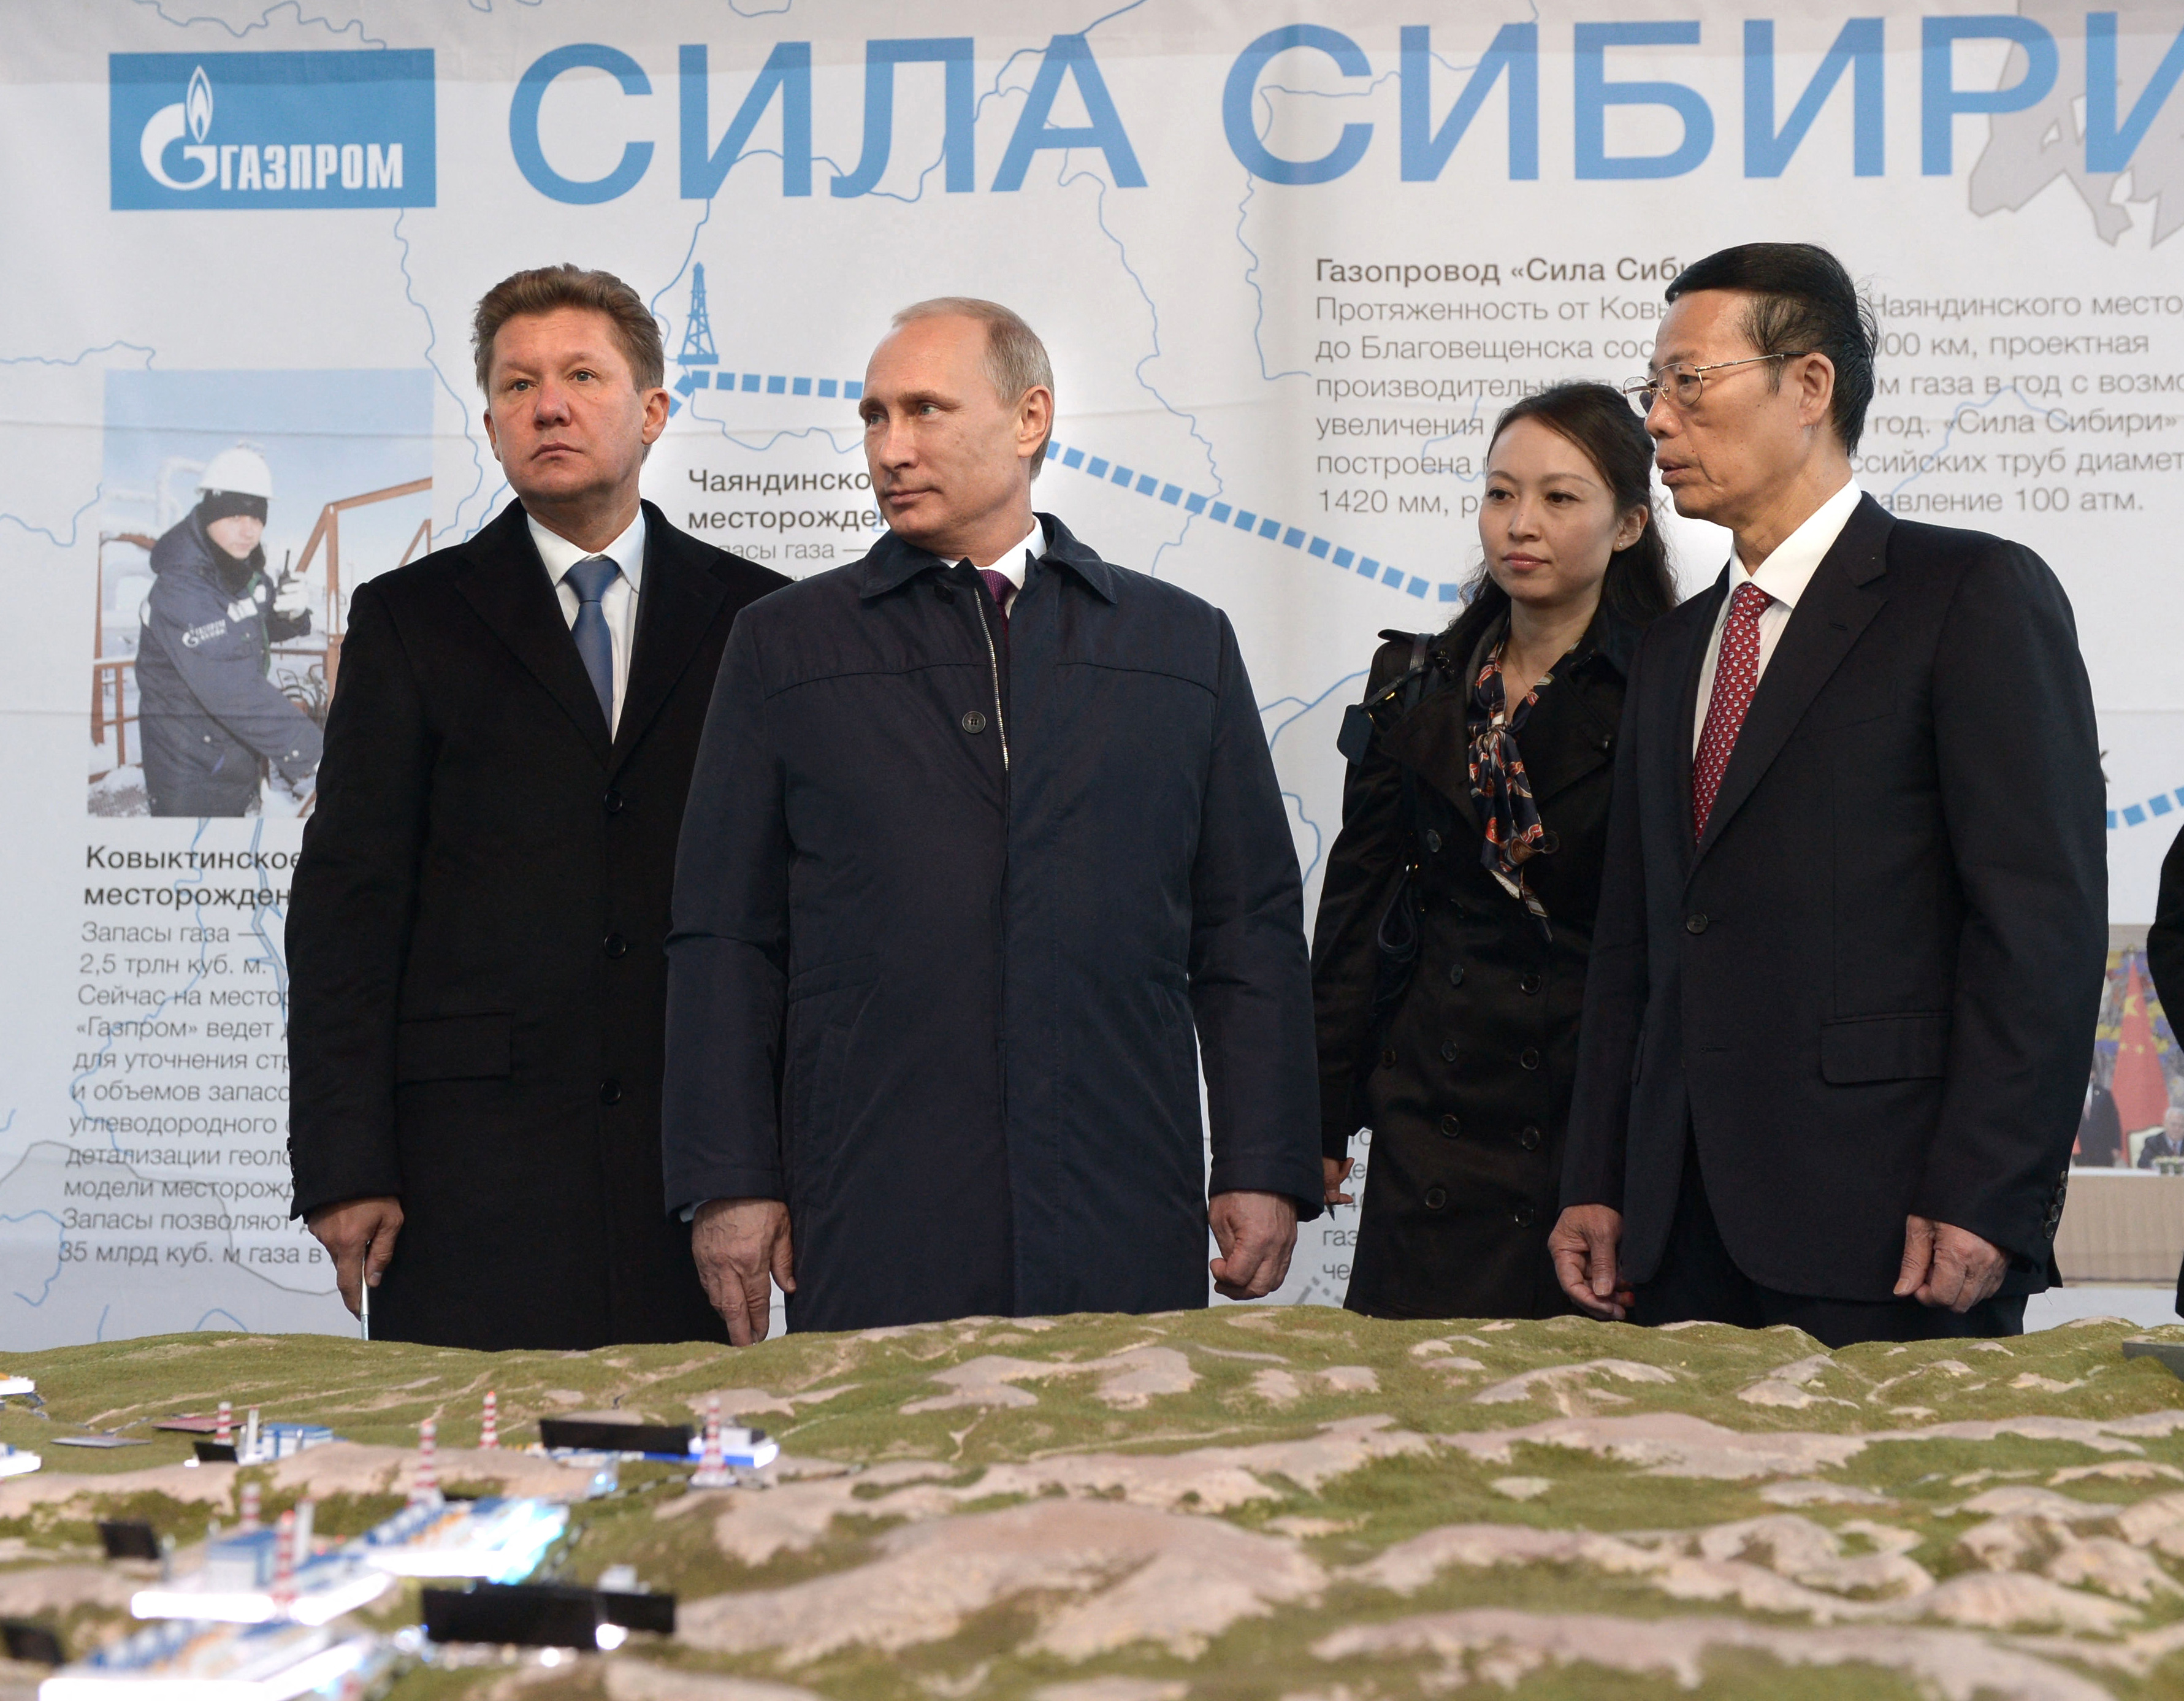 La Russie et la Chine cherchent une nouvelle route gazière alors que « Sibérie 2 » devient le rêve de Poutine